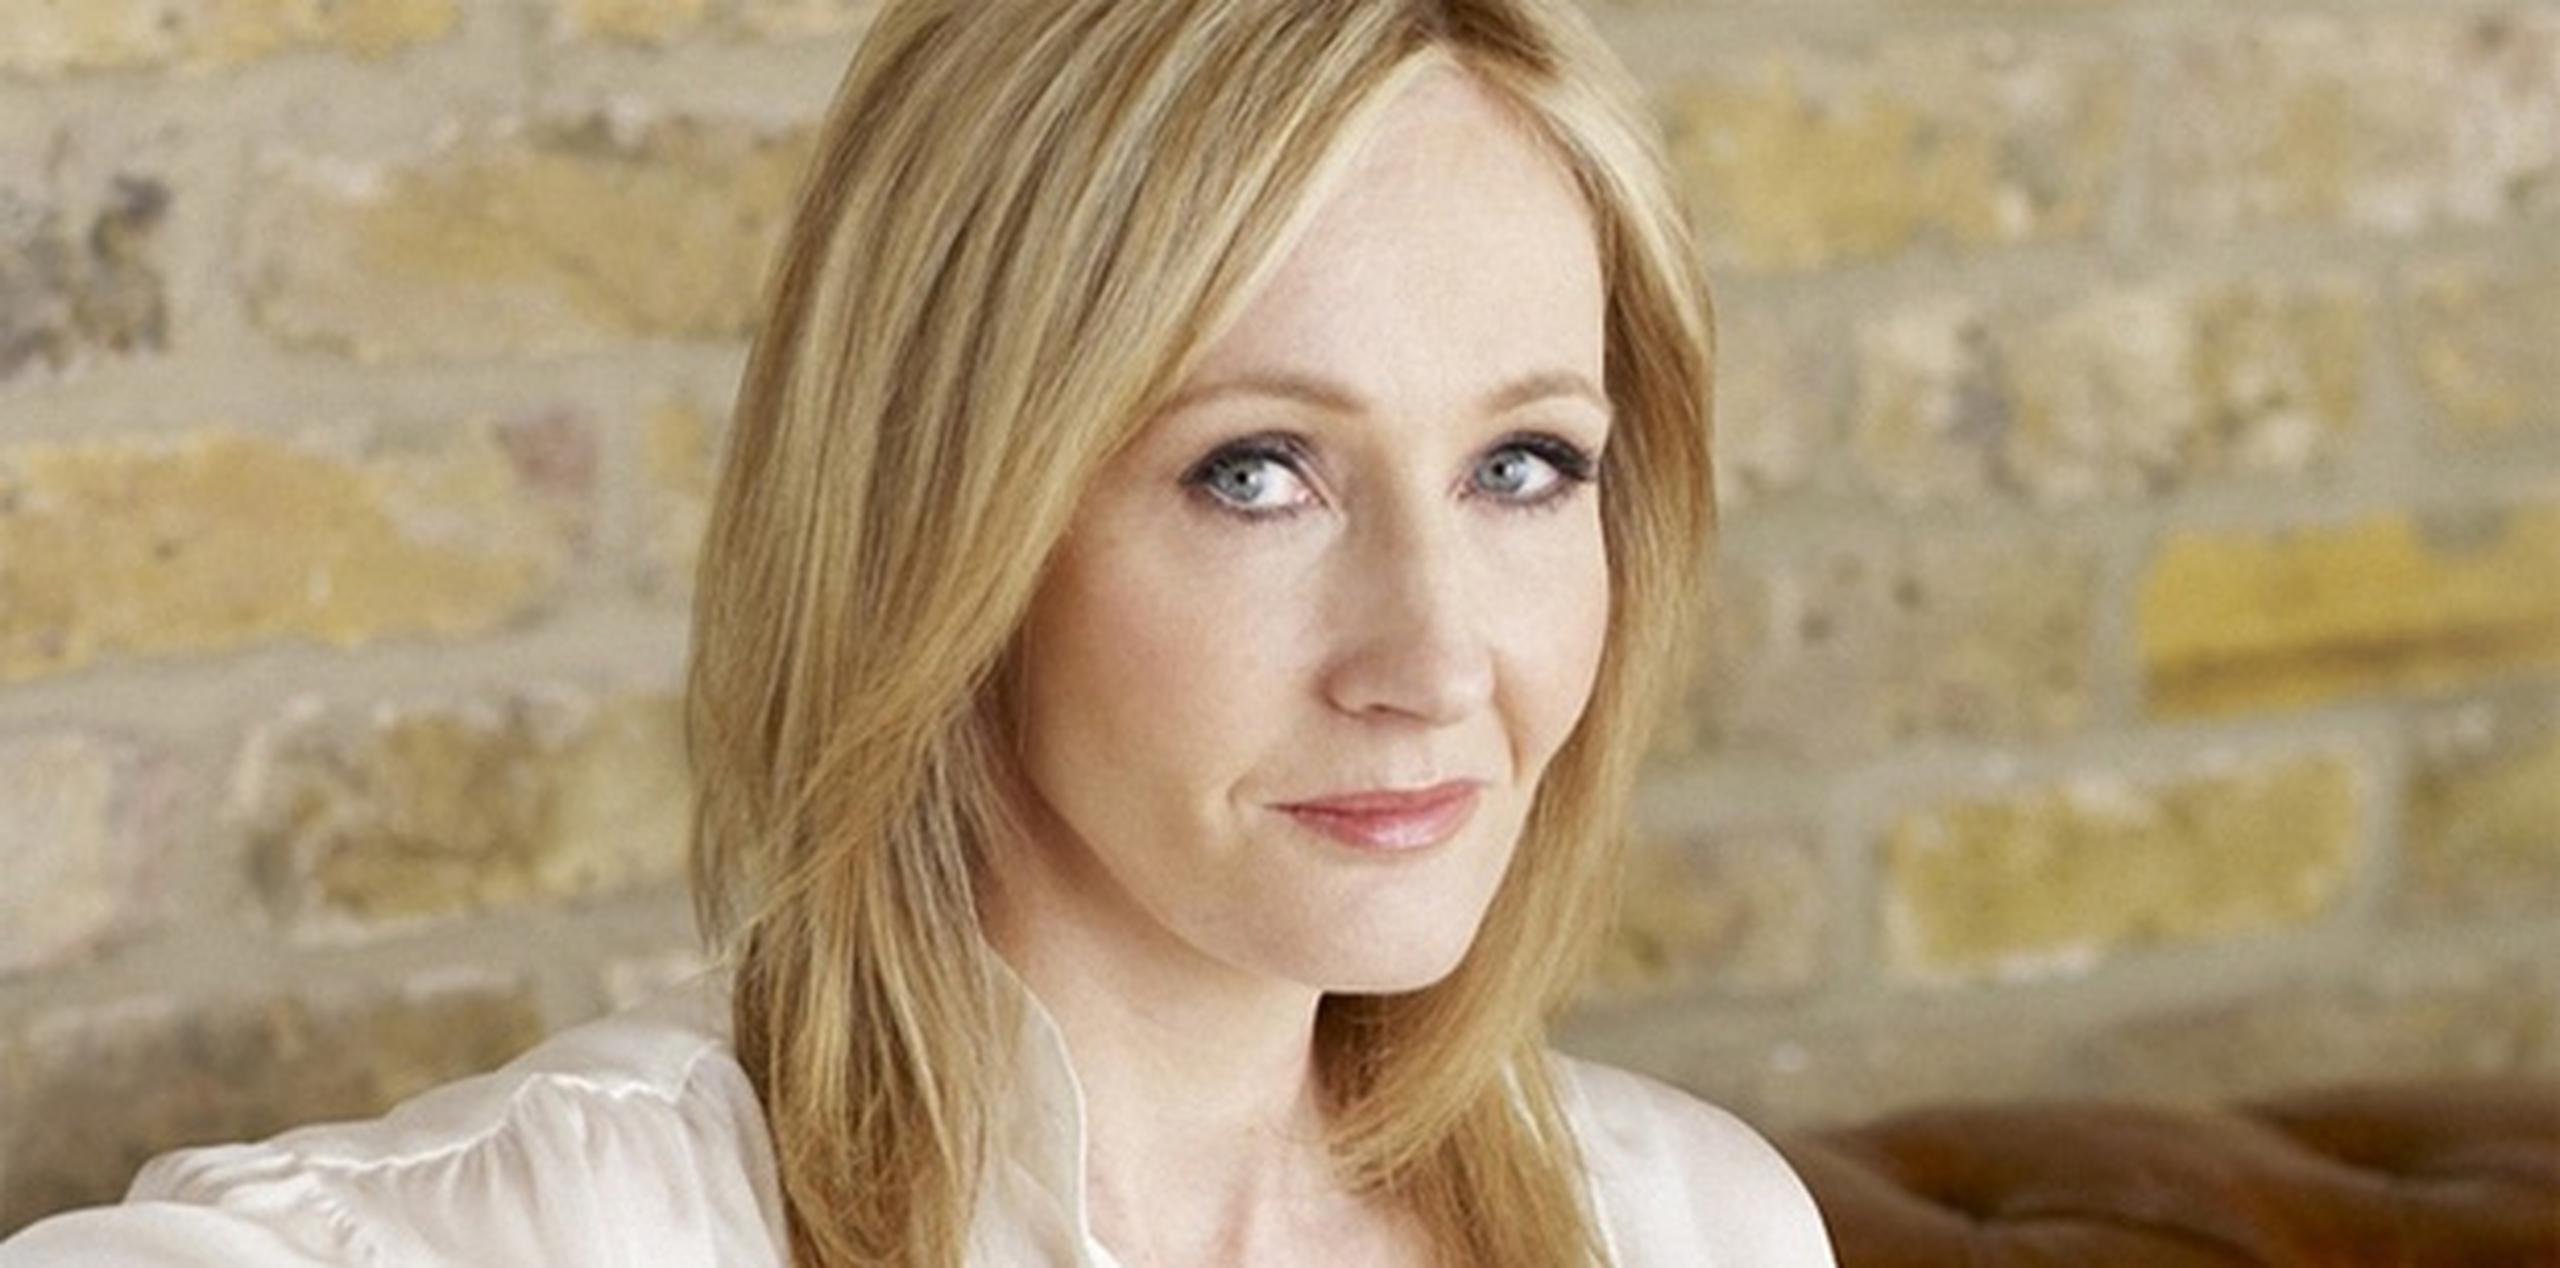 Tras el arrollador éxito de los libros y las películas de Harry Potter, Rowling publicó una novela para adultos, "Una vacante ocasional". (Archivo)